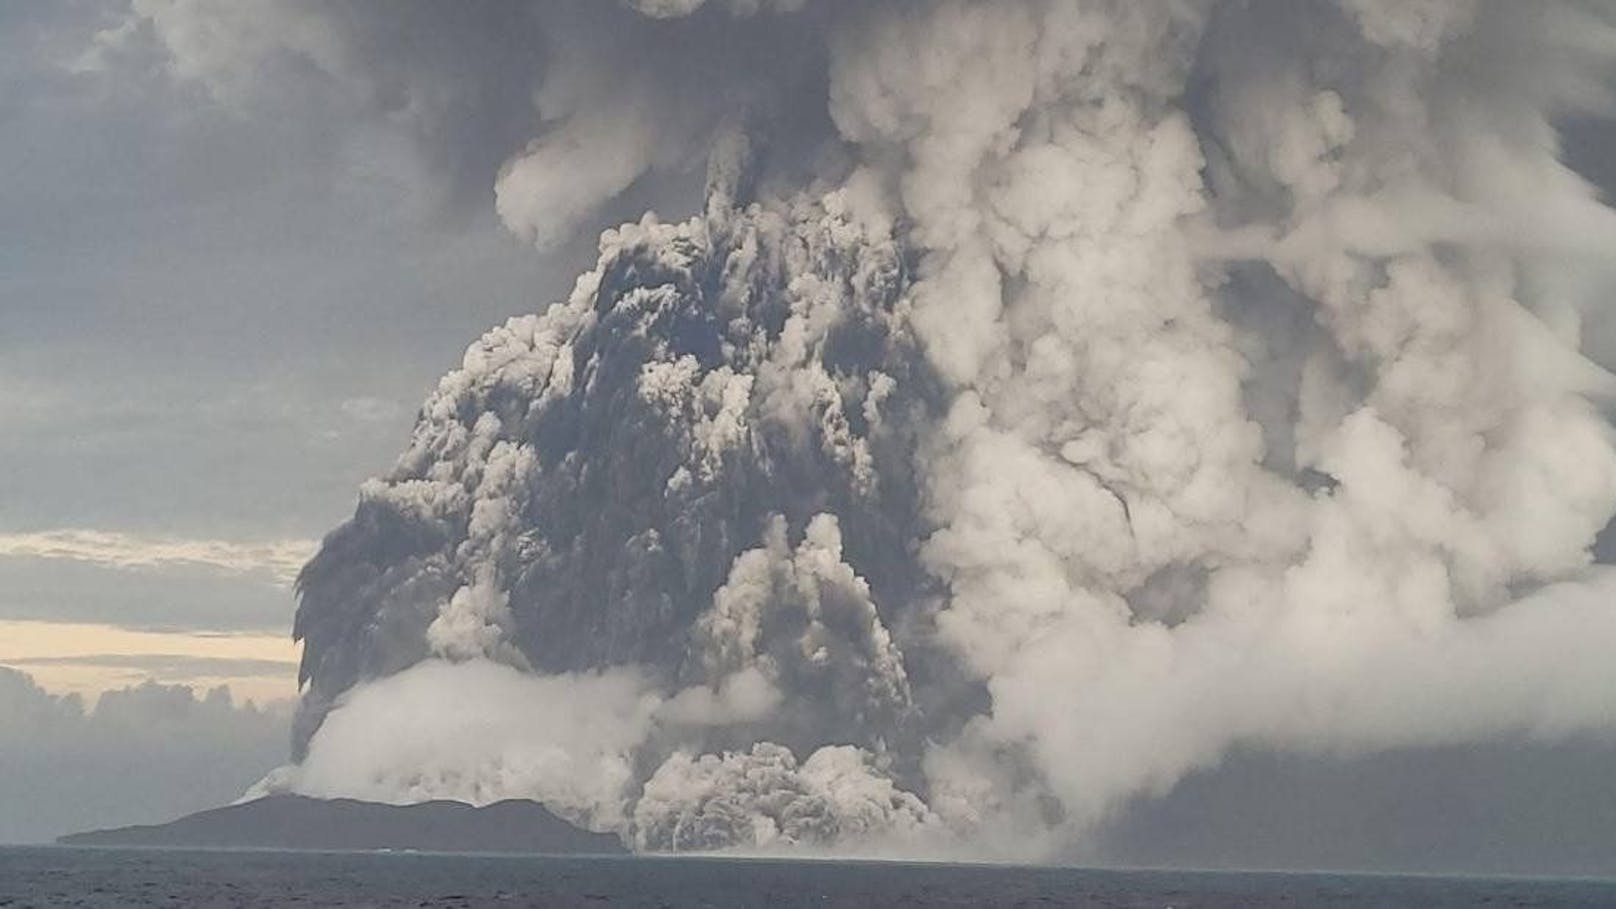 Am 14. Jänner 2022 flog der Unterwasservulkan <strong>Hunga Tonga-Hunga Haʻapai</strong> (HTHH) im Pazifik in einer gigantischen Eruption in die Luft.